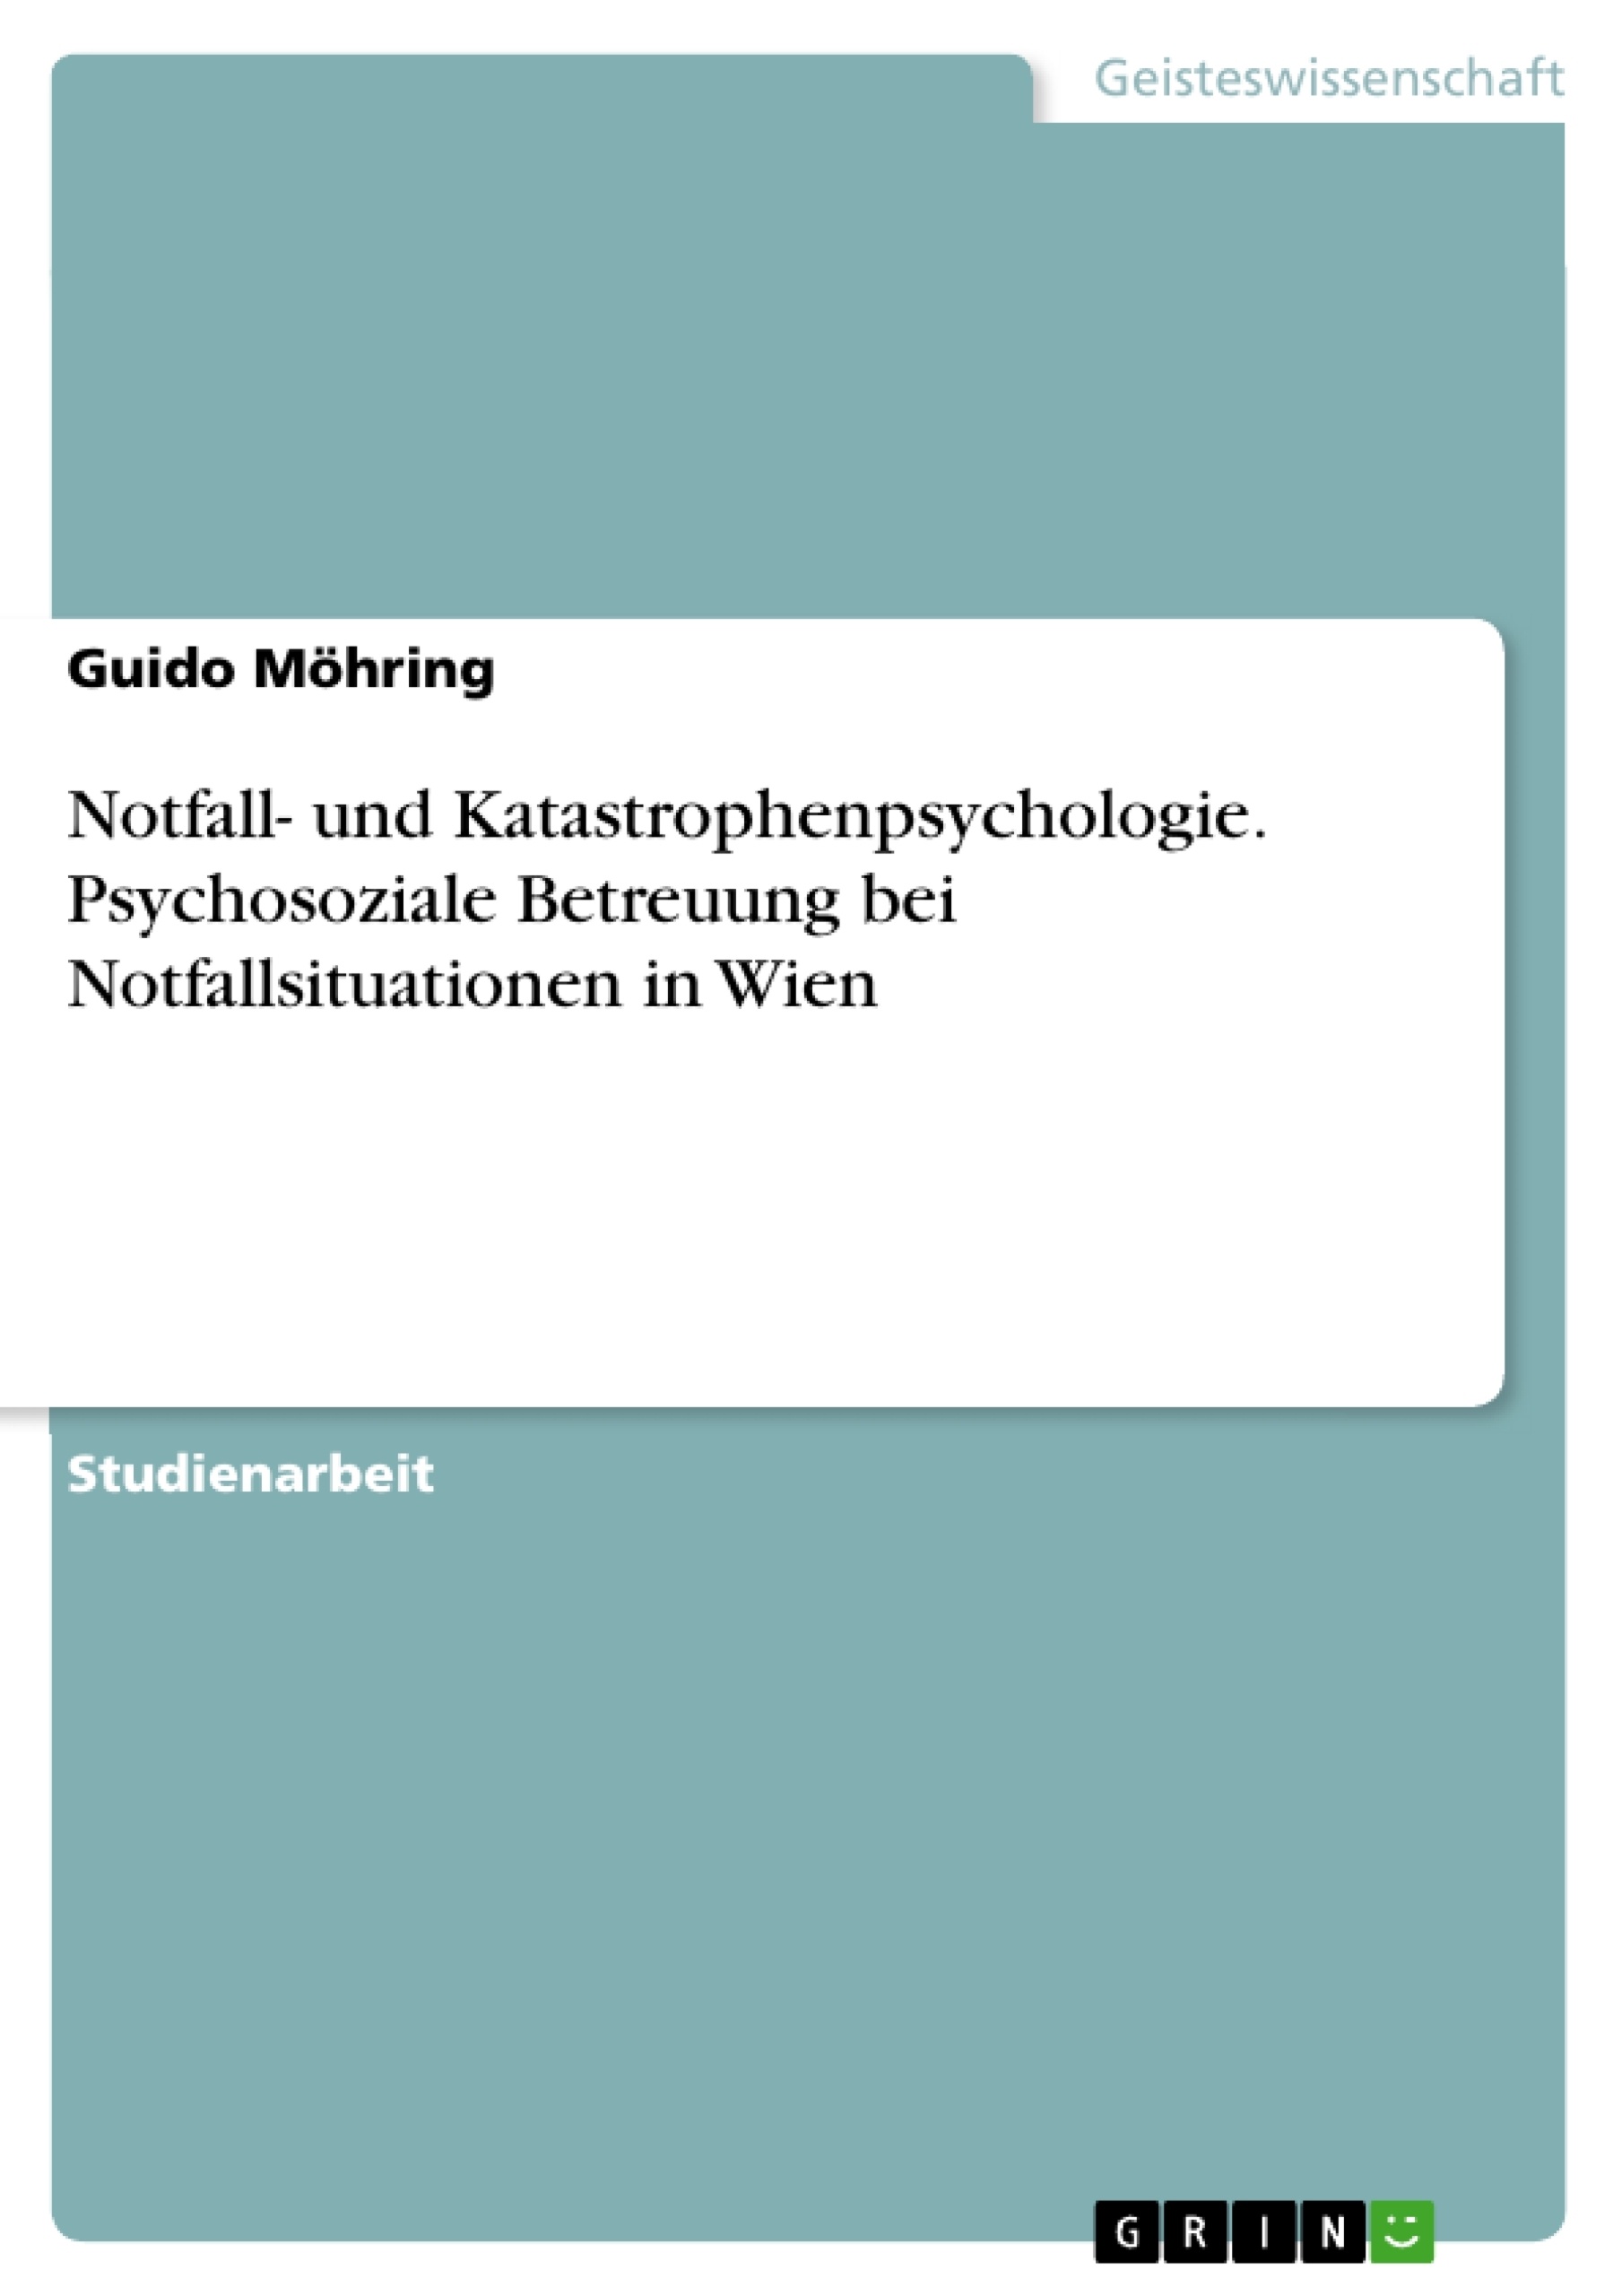 Título: Notfall- und Katastrophenpsychologie. Psychosoziale Betreuung bei Notfallsituationen in Wien